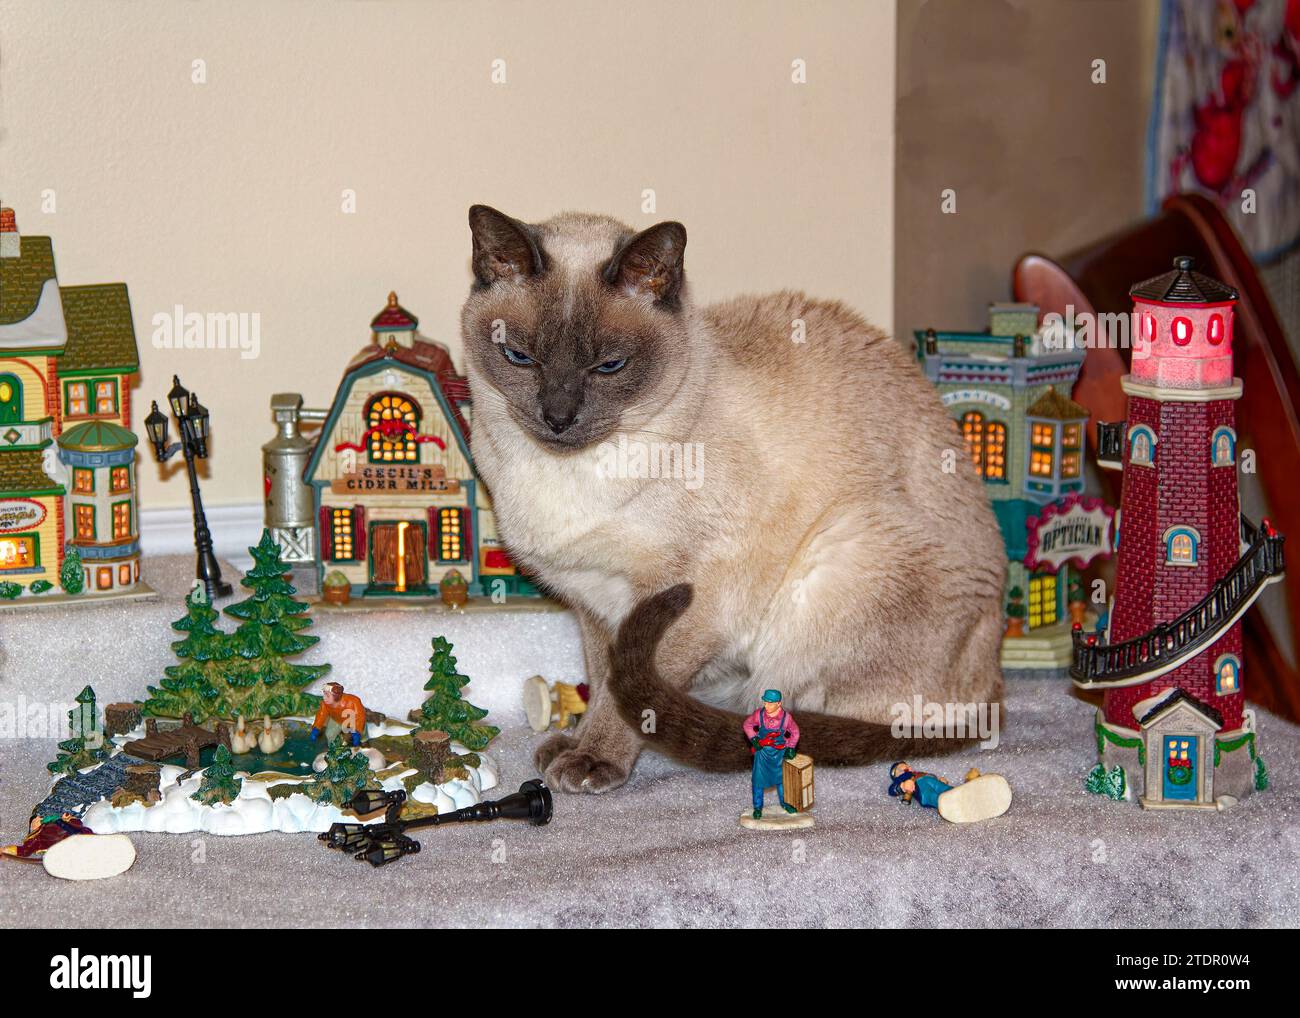 Gatto tonkinese; seduto tra pezzi di ceramica del villaggio; alcune figure abbattute, decorazione natalizia; animale; carino; felino; curioso; PET; PR Foto Stock